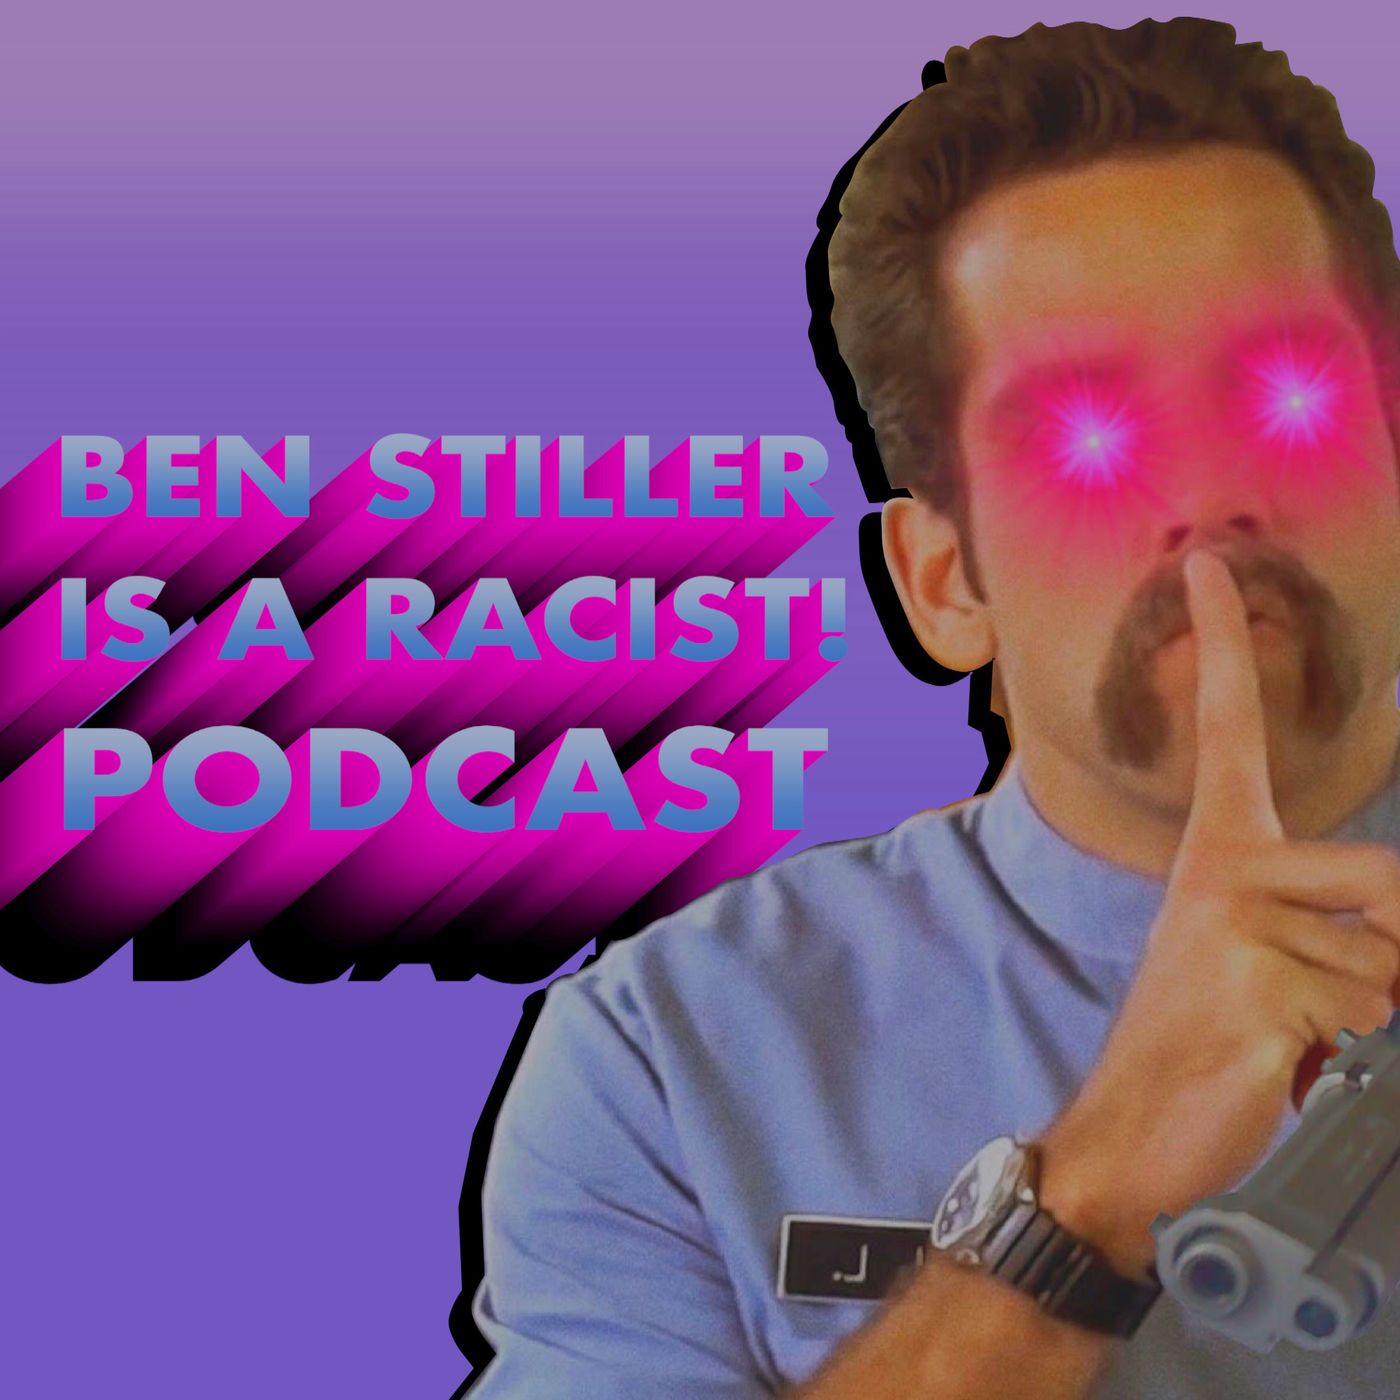 Ben Stiller is a Racist!